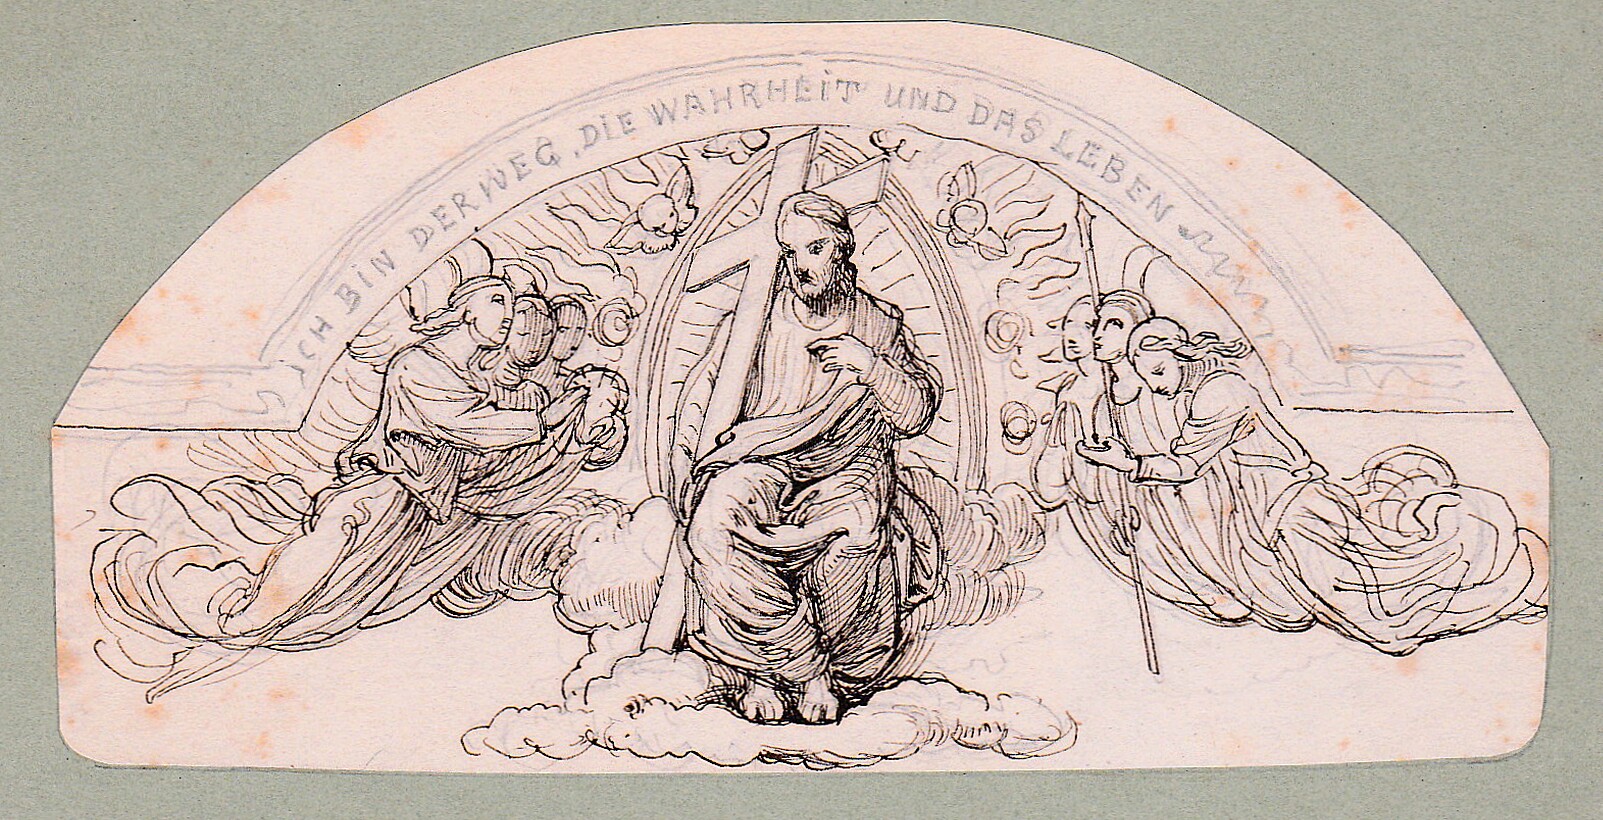 Der auferstandene Christus im Himmel zwischen den Himmlischen Heerscharen (Schloß Wernigerode GmbH RR-F)